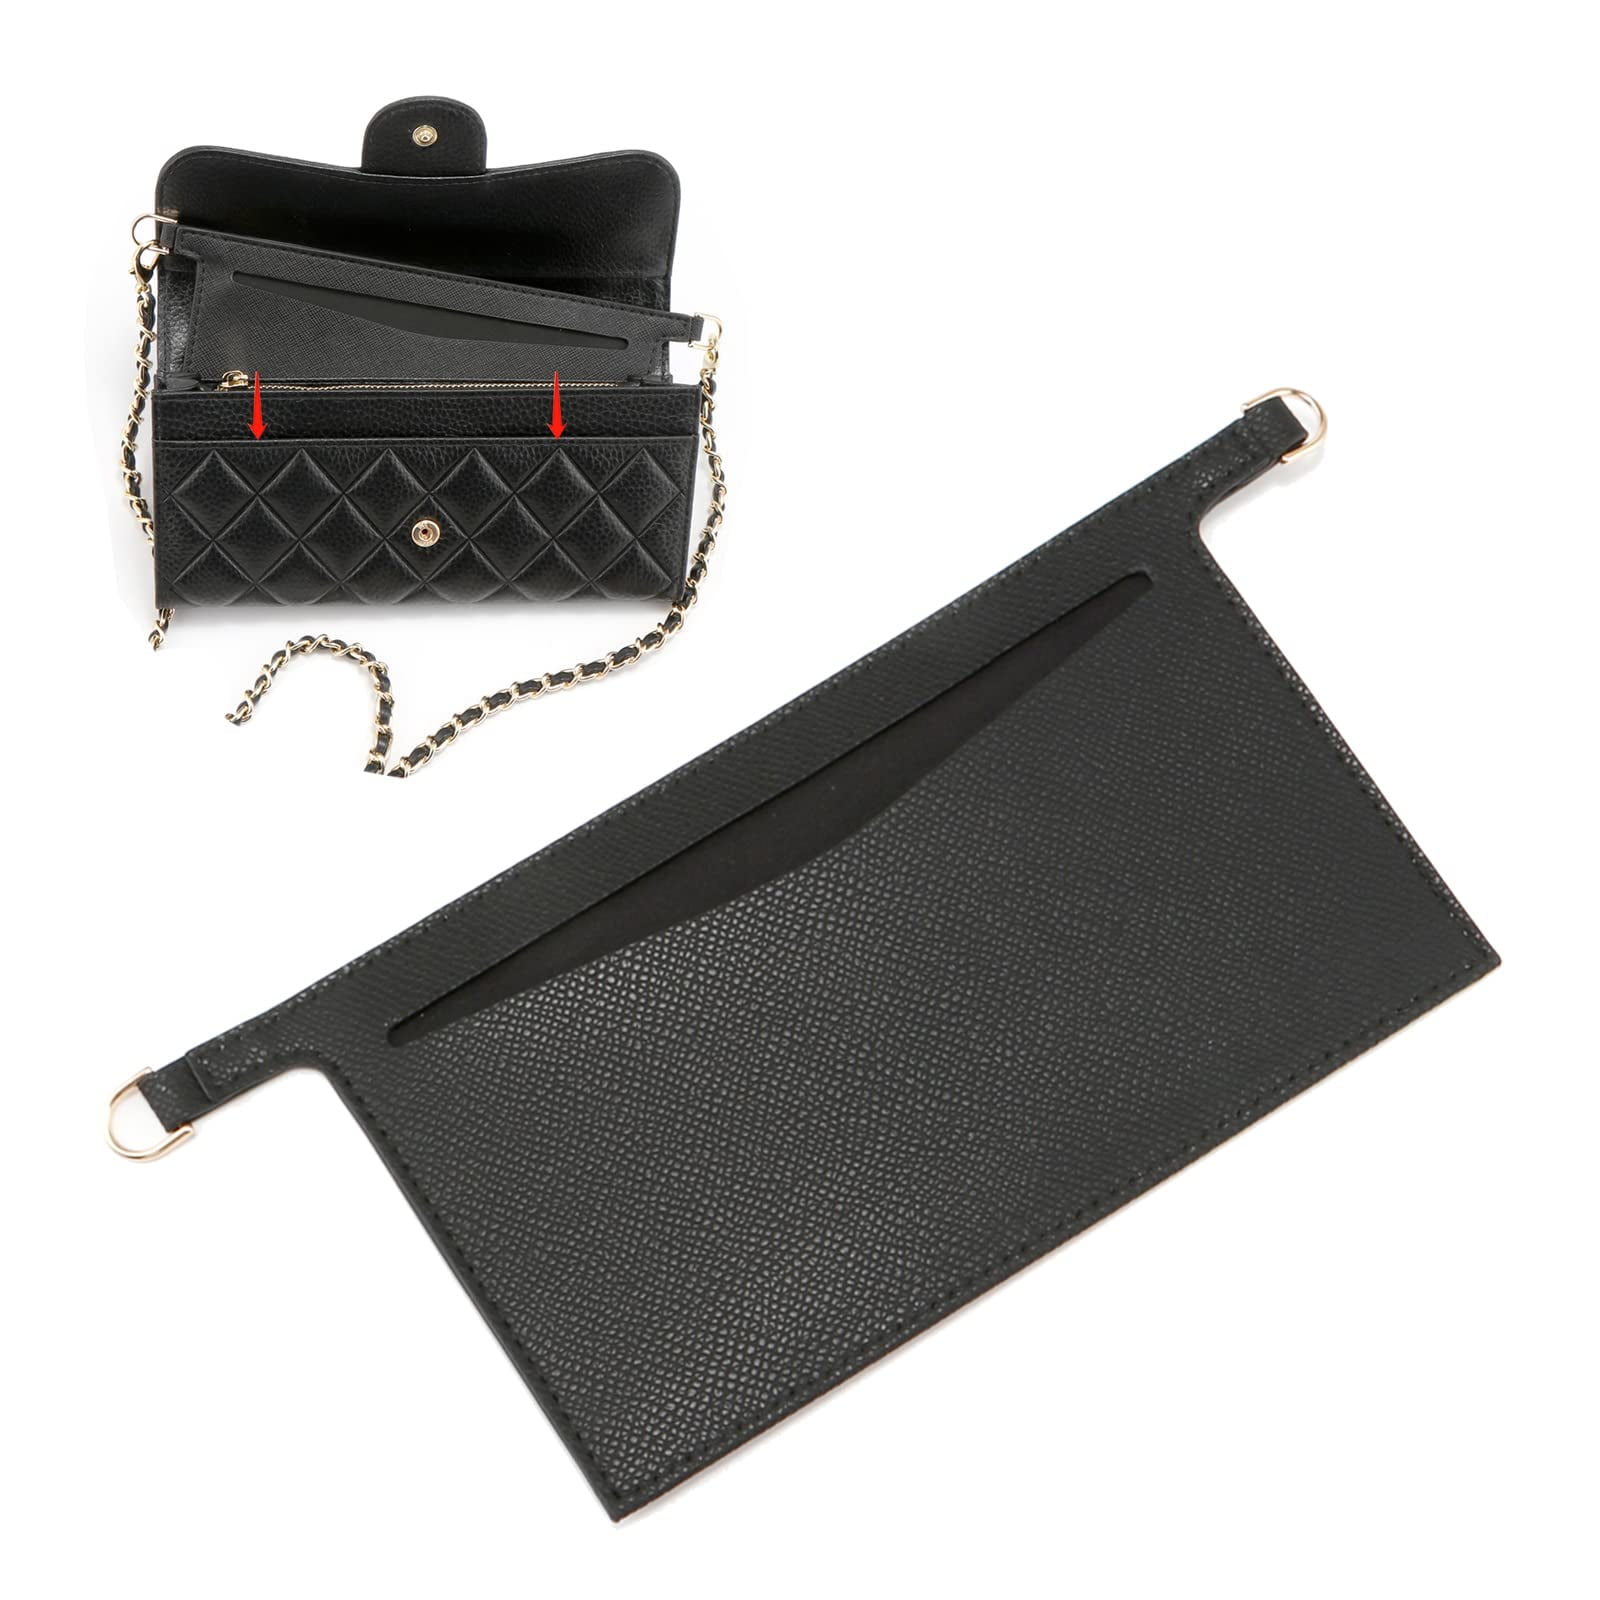 Purse Conversion Kit for LV Emilie Wallet, Detachable Bag Insert